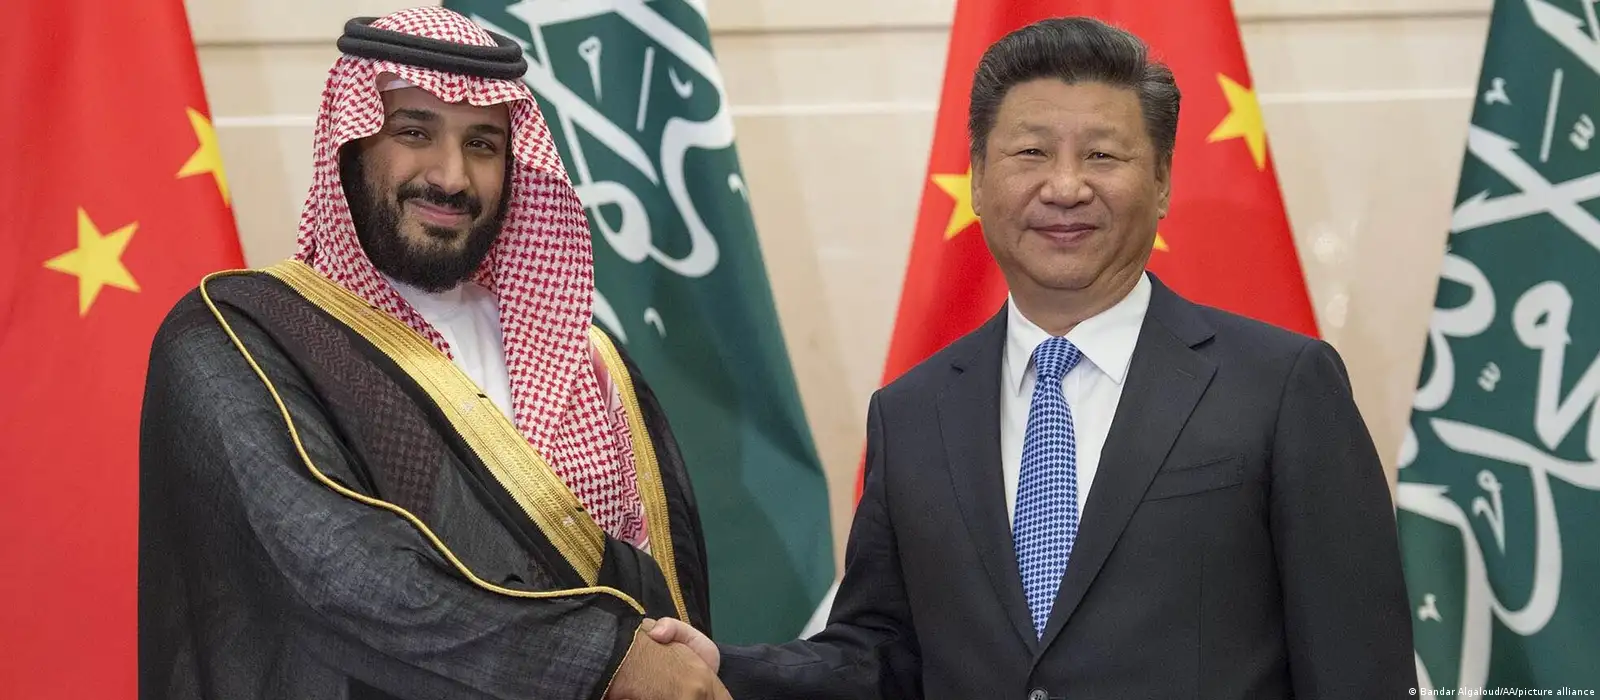 Hd Xnxxxnxxx - Cina dan Arab Saudi, Dua Sekutu Baru? â€“ DW â€“ 23.03.2022